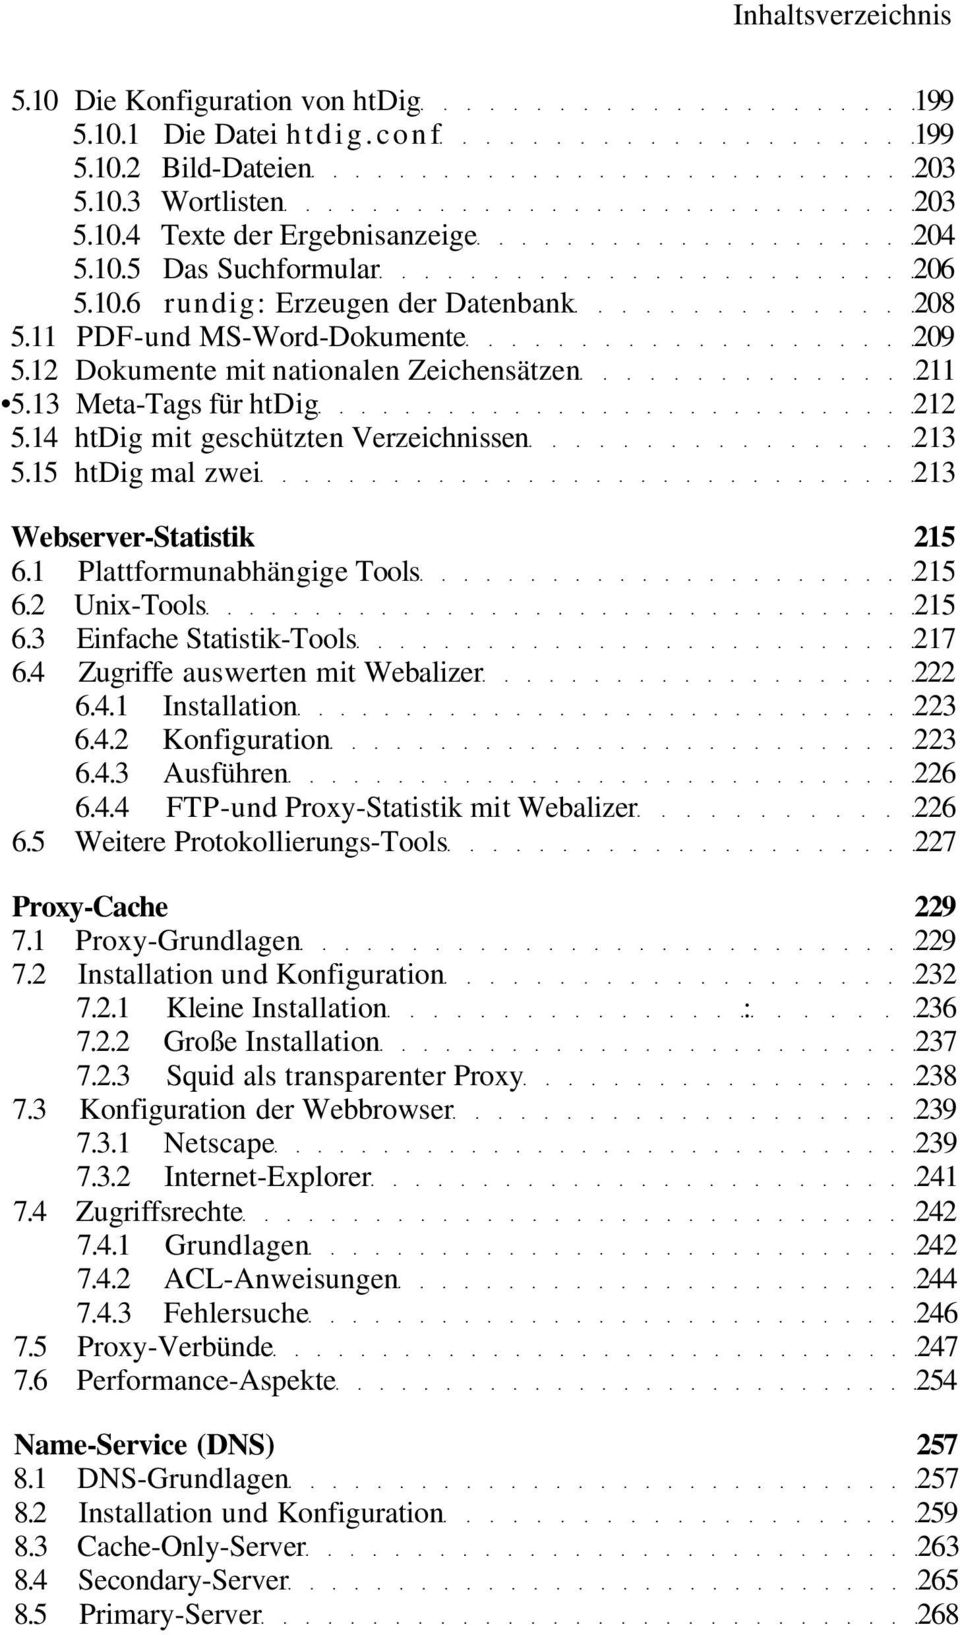 15 htdig mal zwei 213 Webserver-Statistik 215 6.1 Plattformunabhängige Tools 215 6.2 Unix-Tools 215 6.3 Einfache Statistik-Tools 217 6.4 Zugriffe auswerten mit Webalizer 222 6.4.1 Installation 223 6.